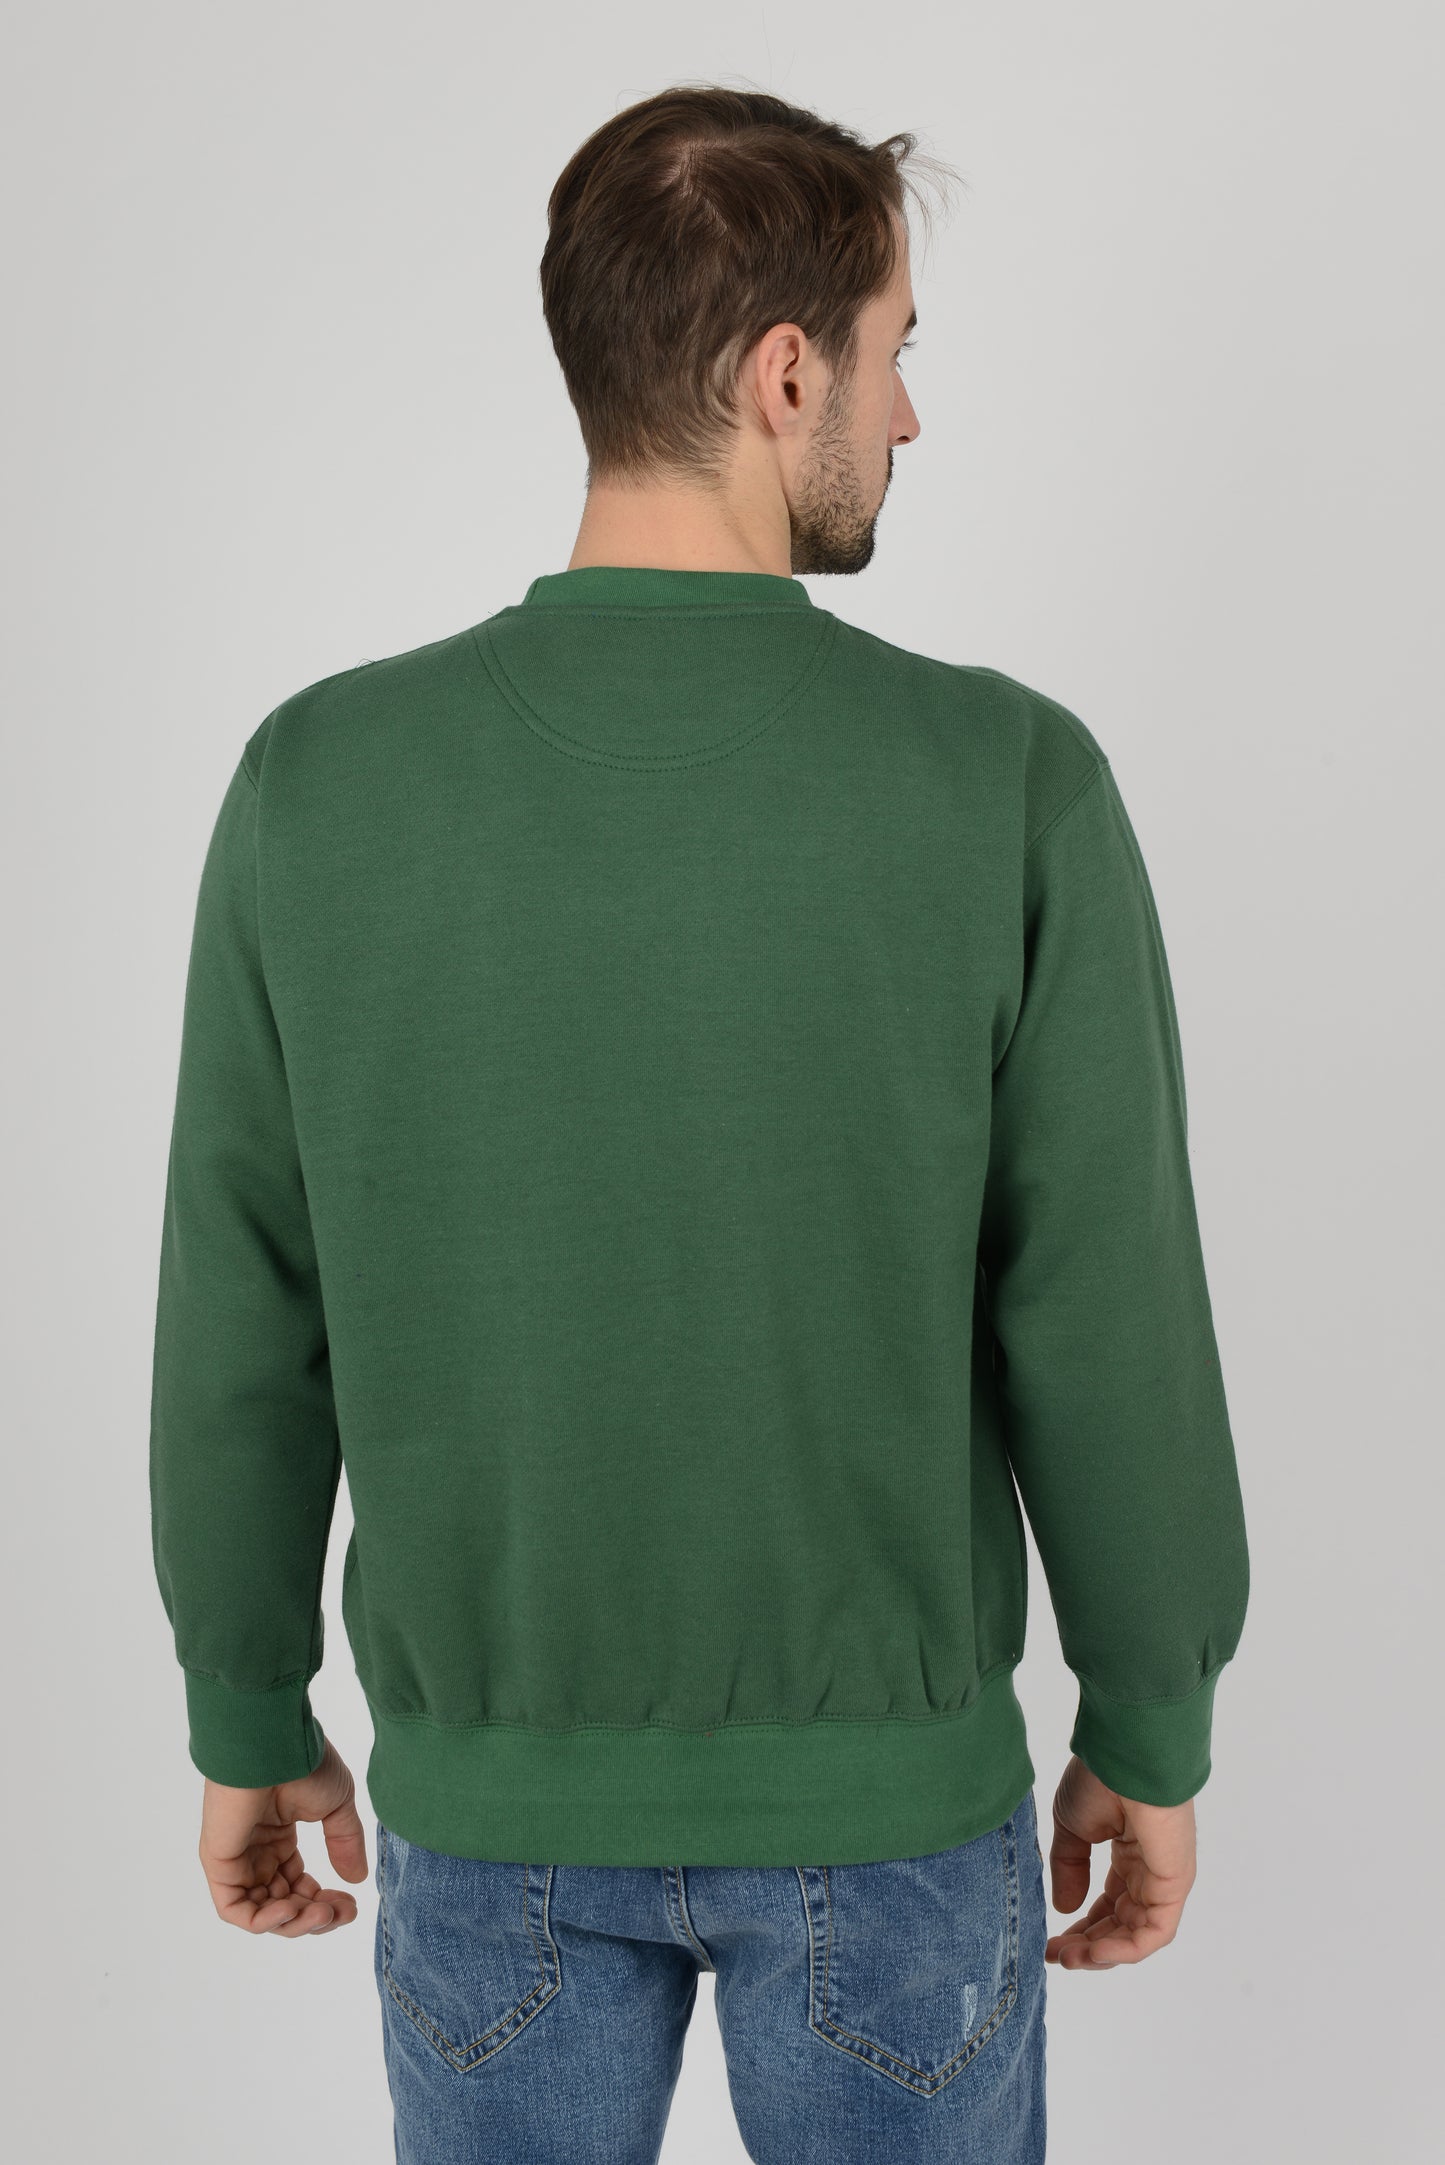 Mens-Plain-Fleece-Sweatshirt-Casual-Bottle-Green